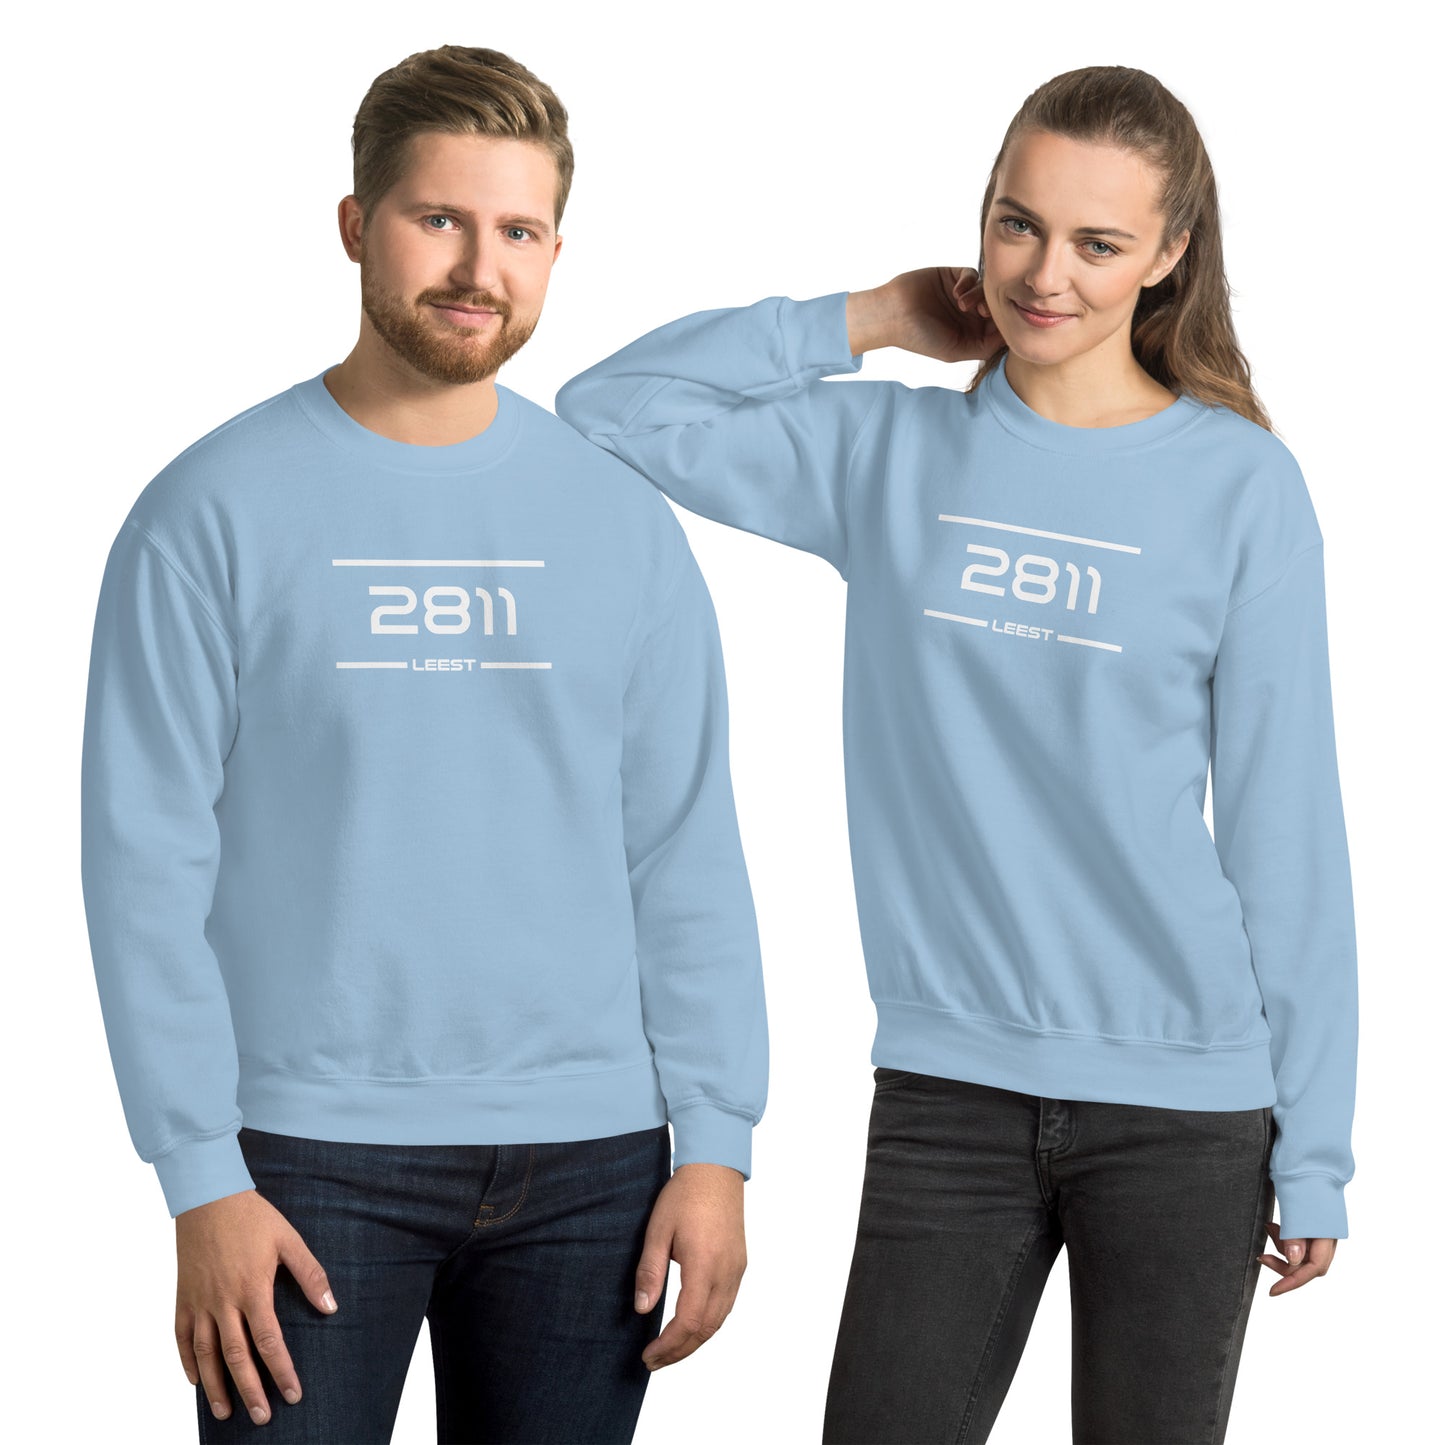 Sweater - 2811 - Leest (M/V)